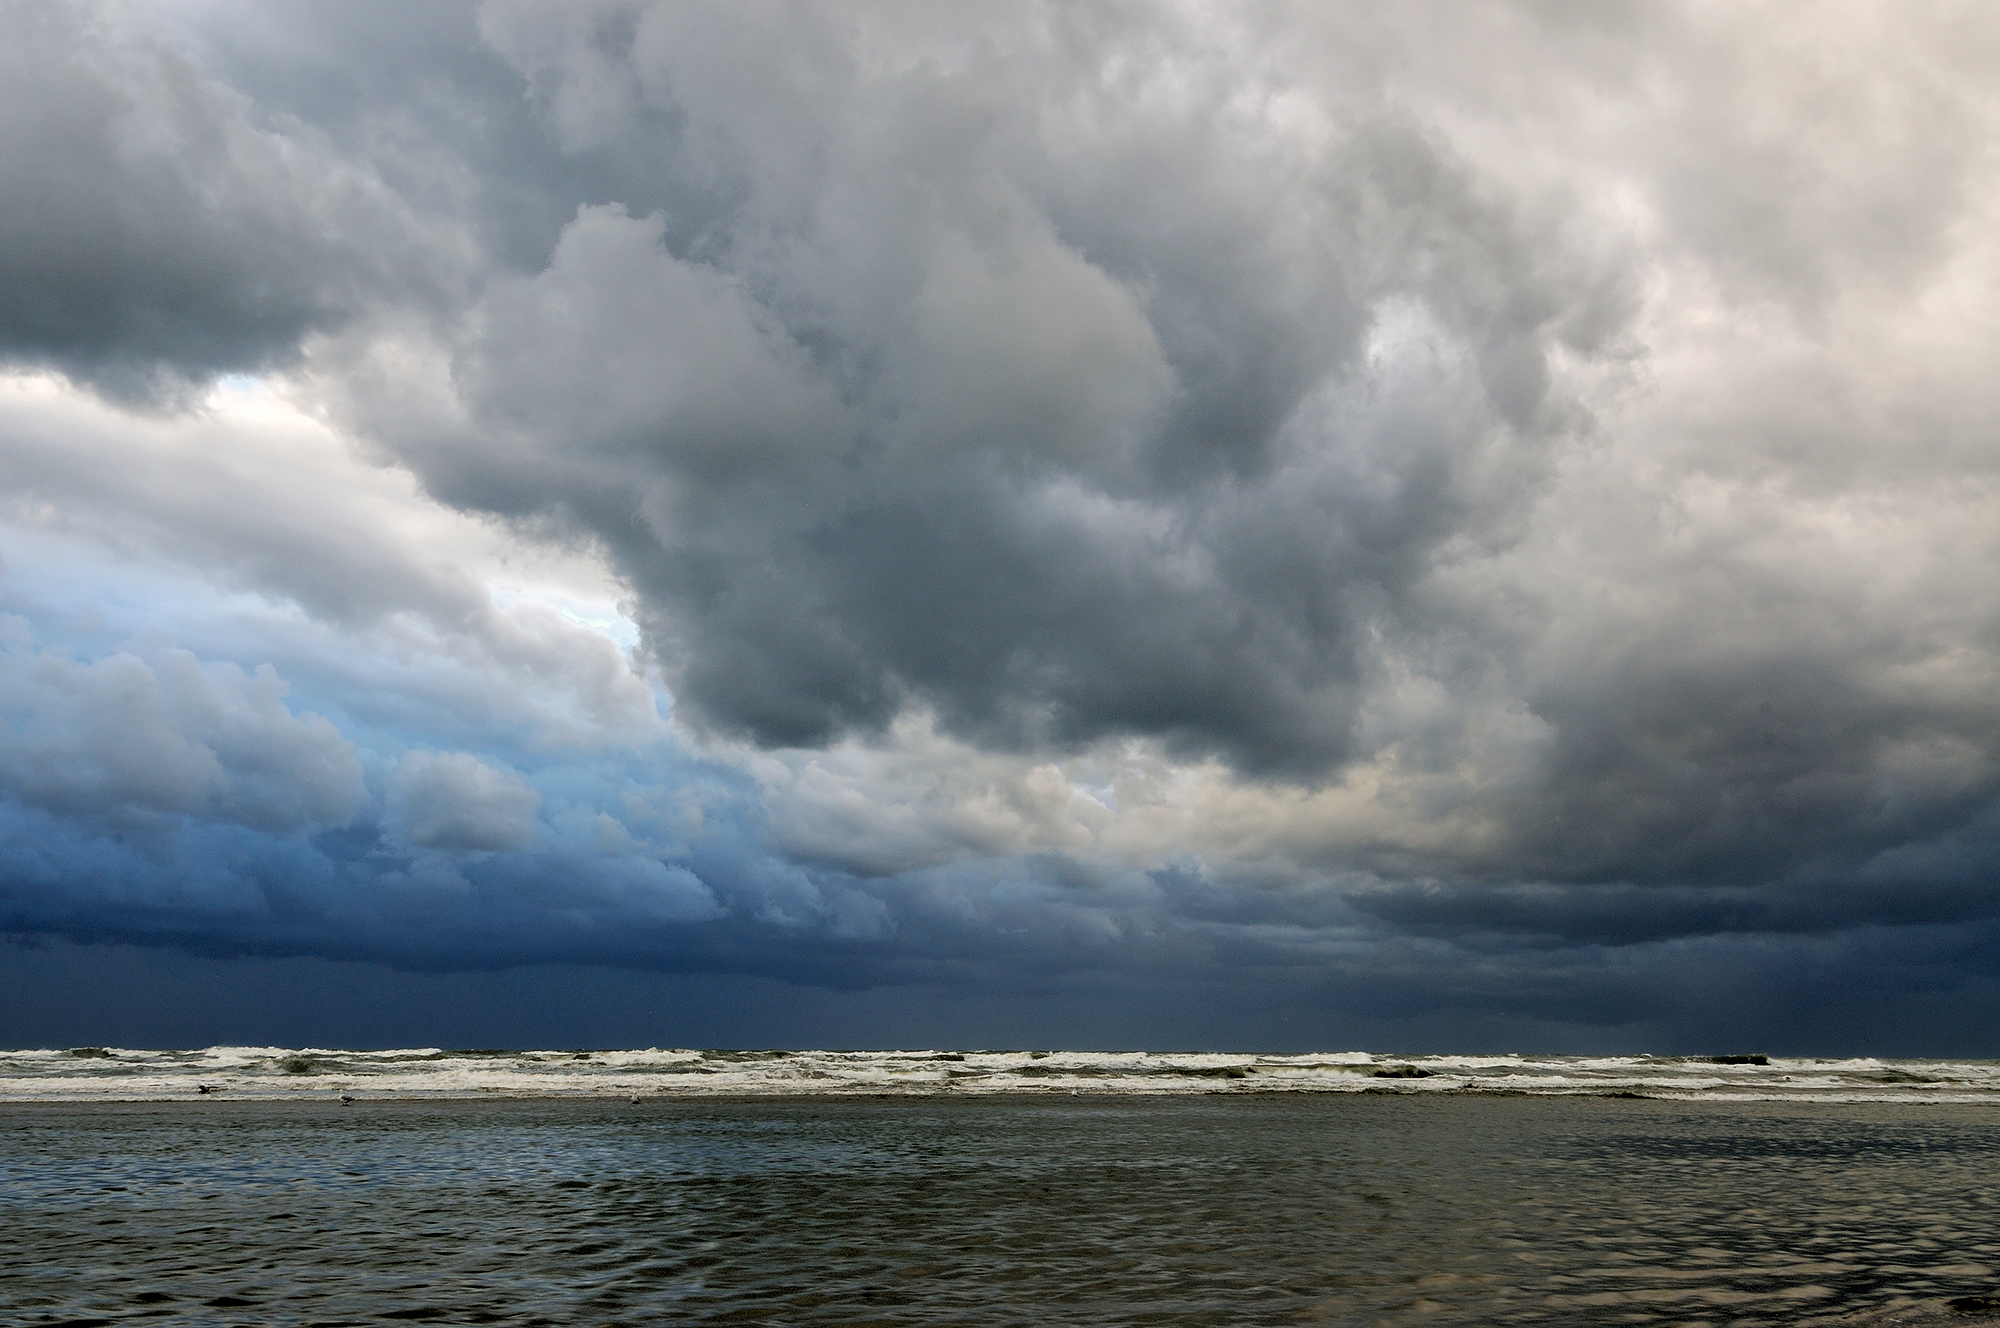 Donkere, dreigende wolkenlucht tijdens storm boven zee op het strand van Wijk aan Zee.